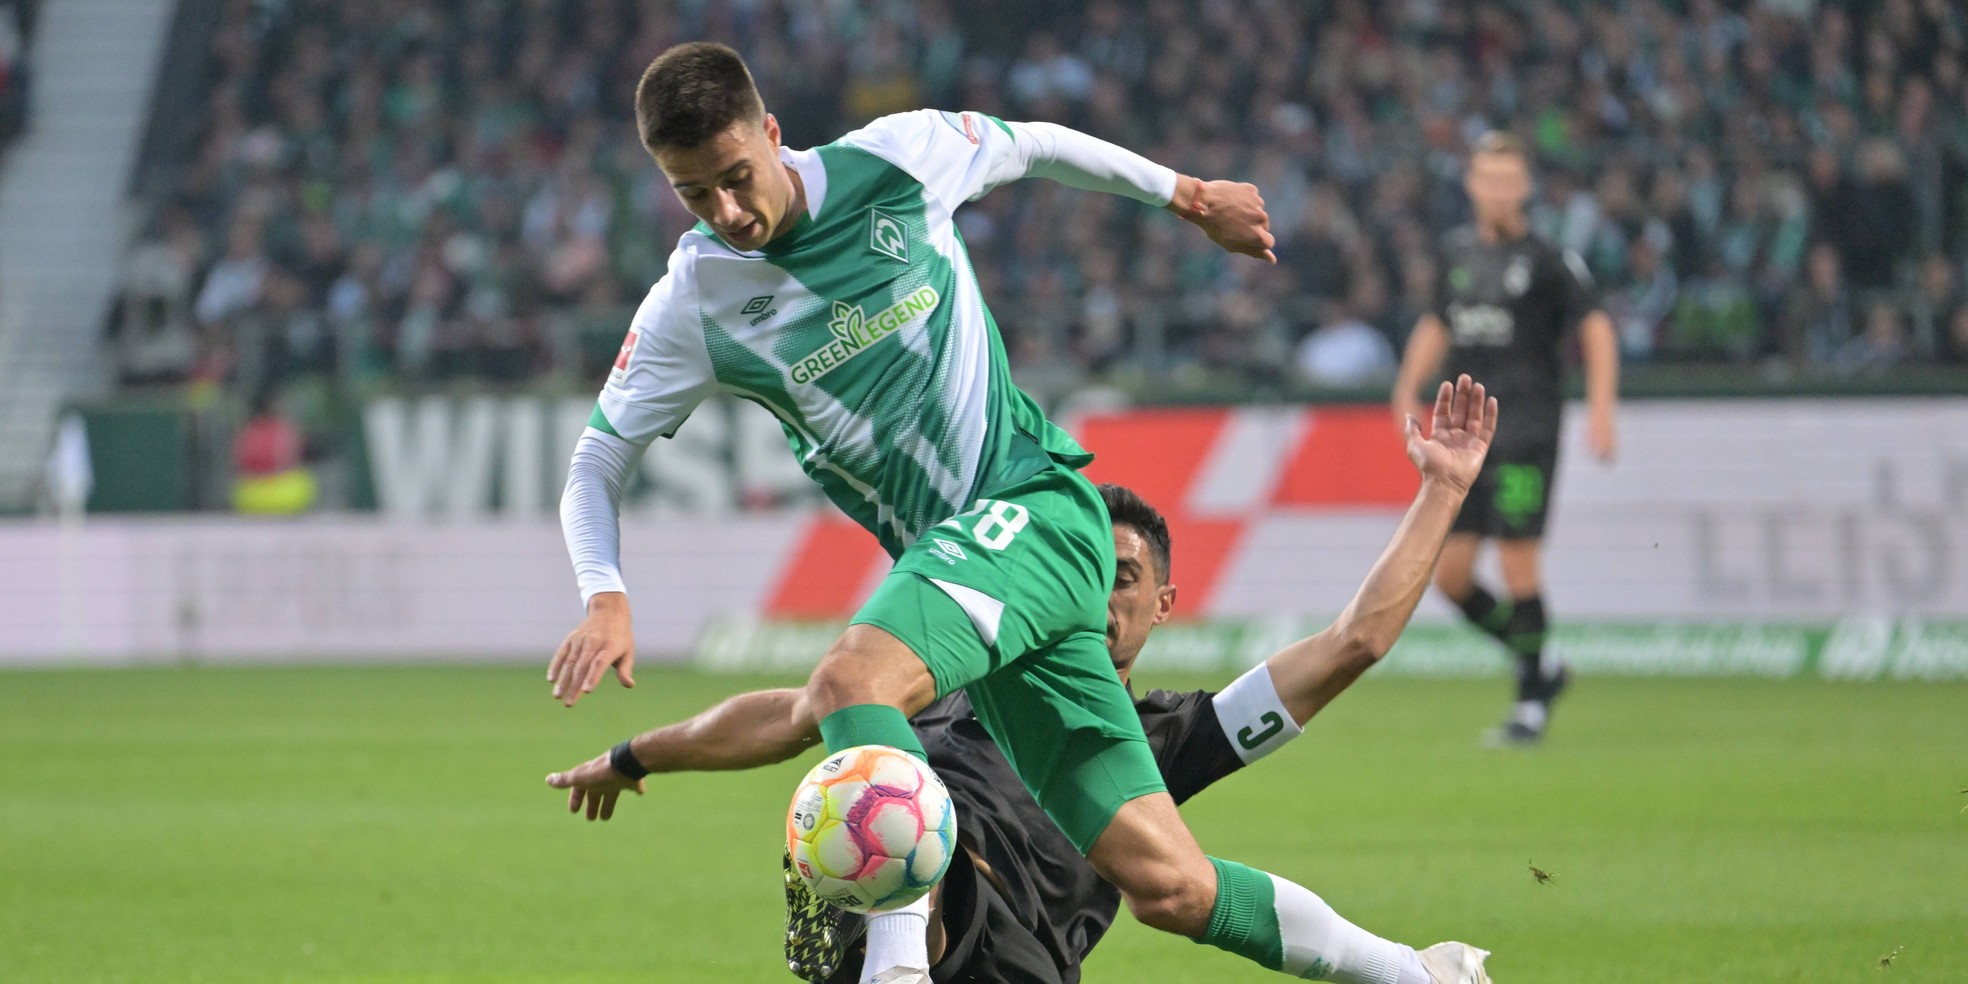 Ilia Gruev vom SV Werder Bremen